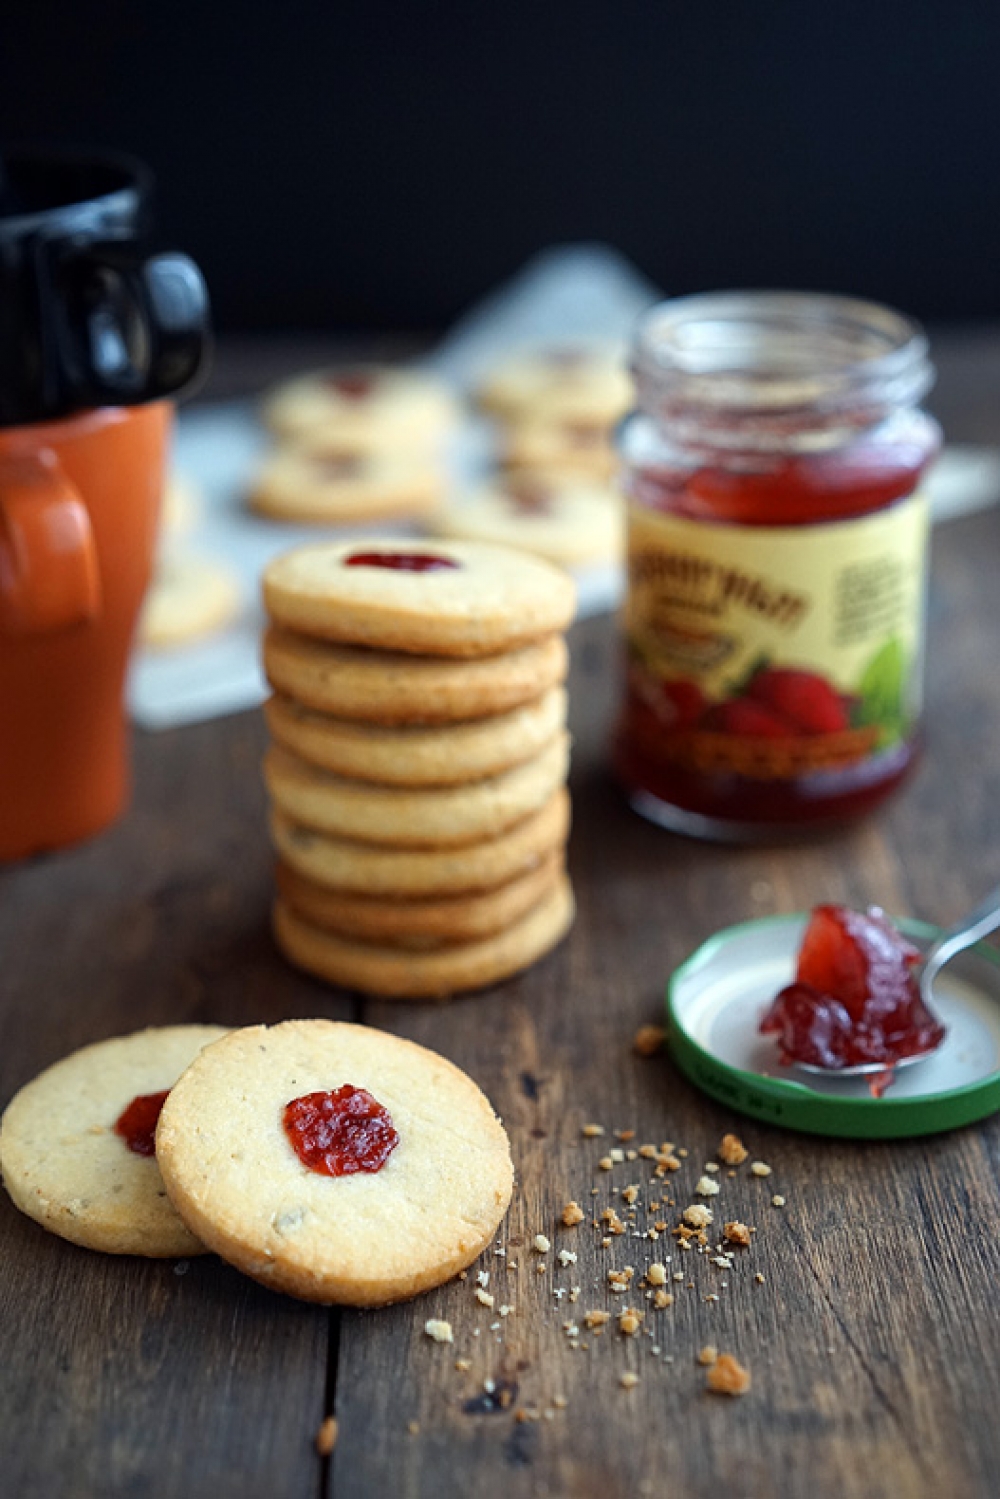 Shortbread cookies with jam